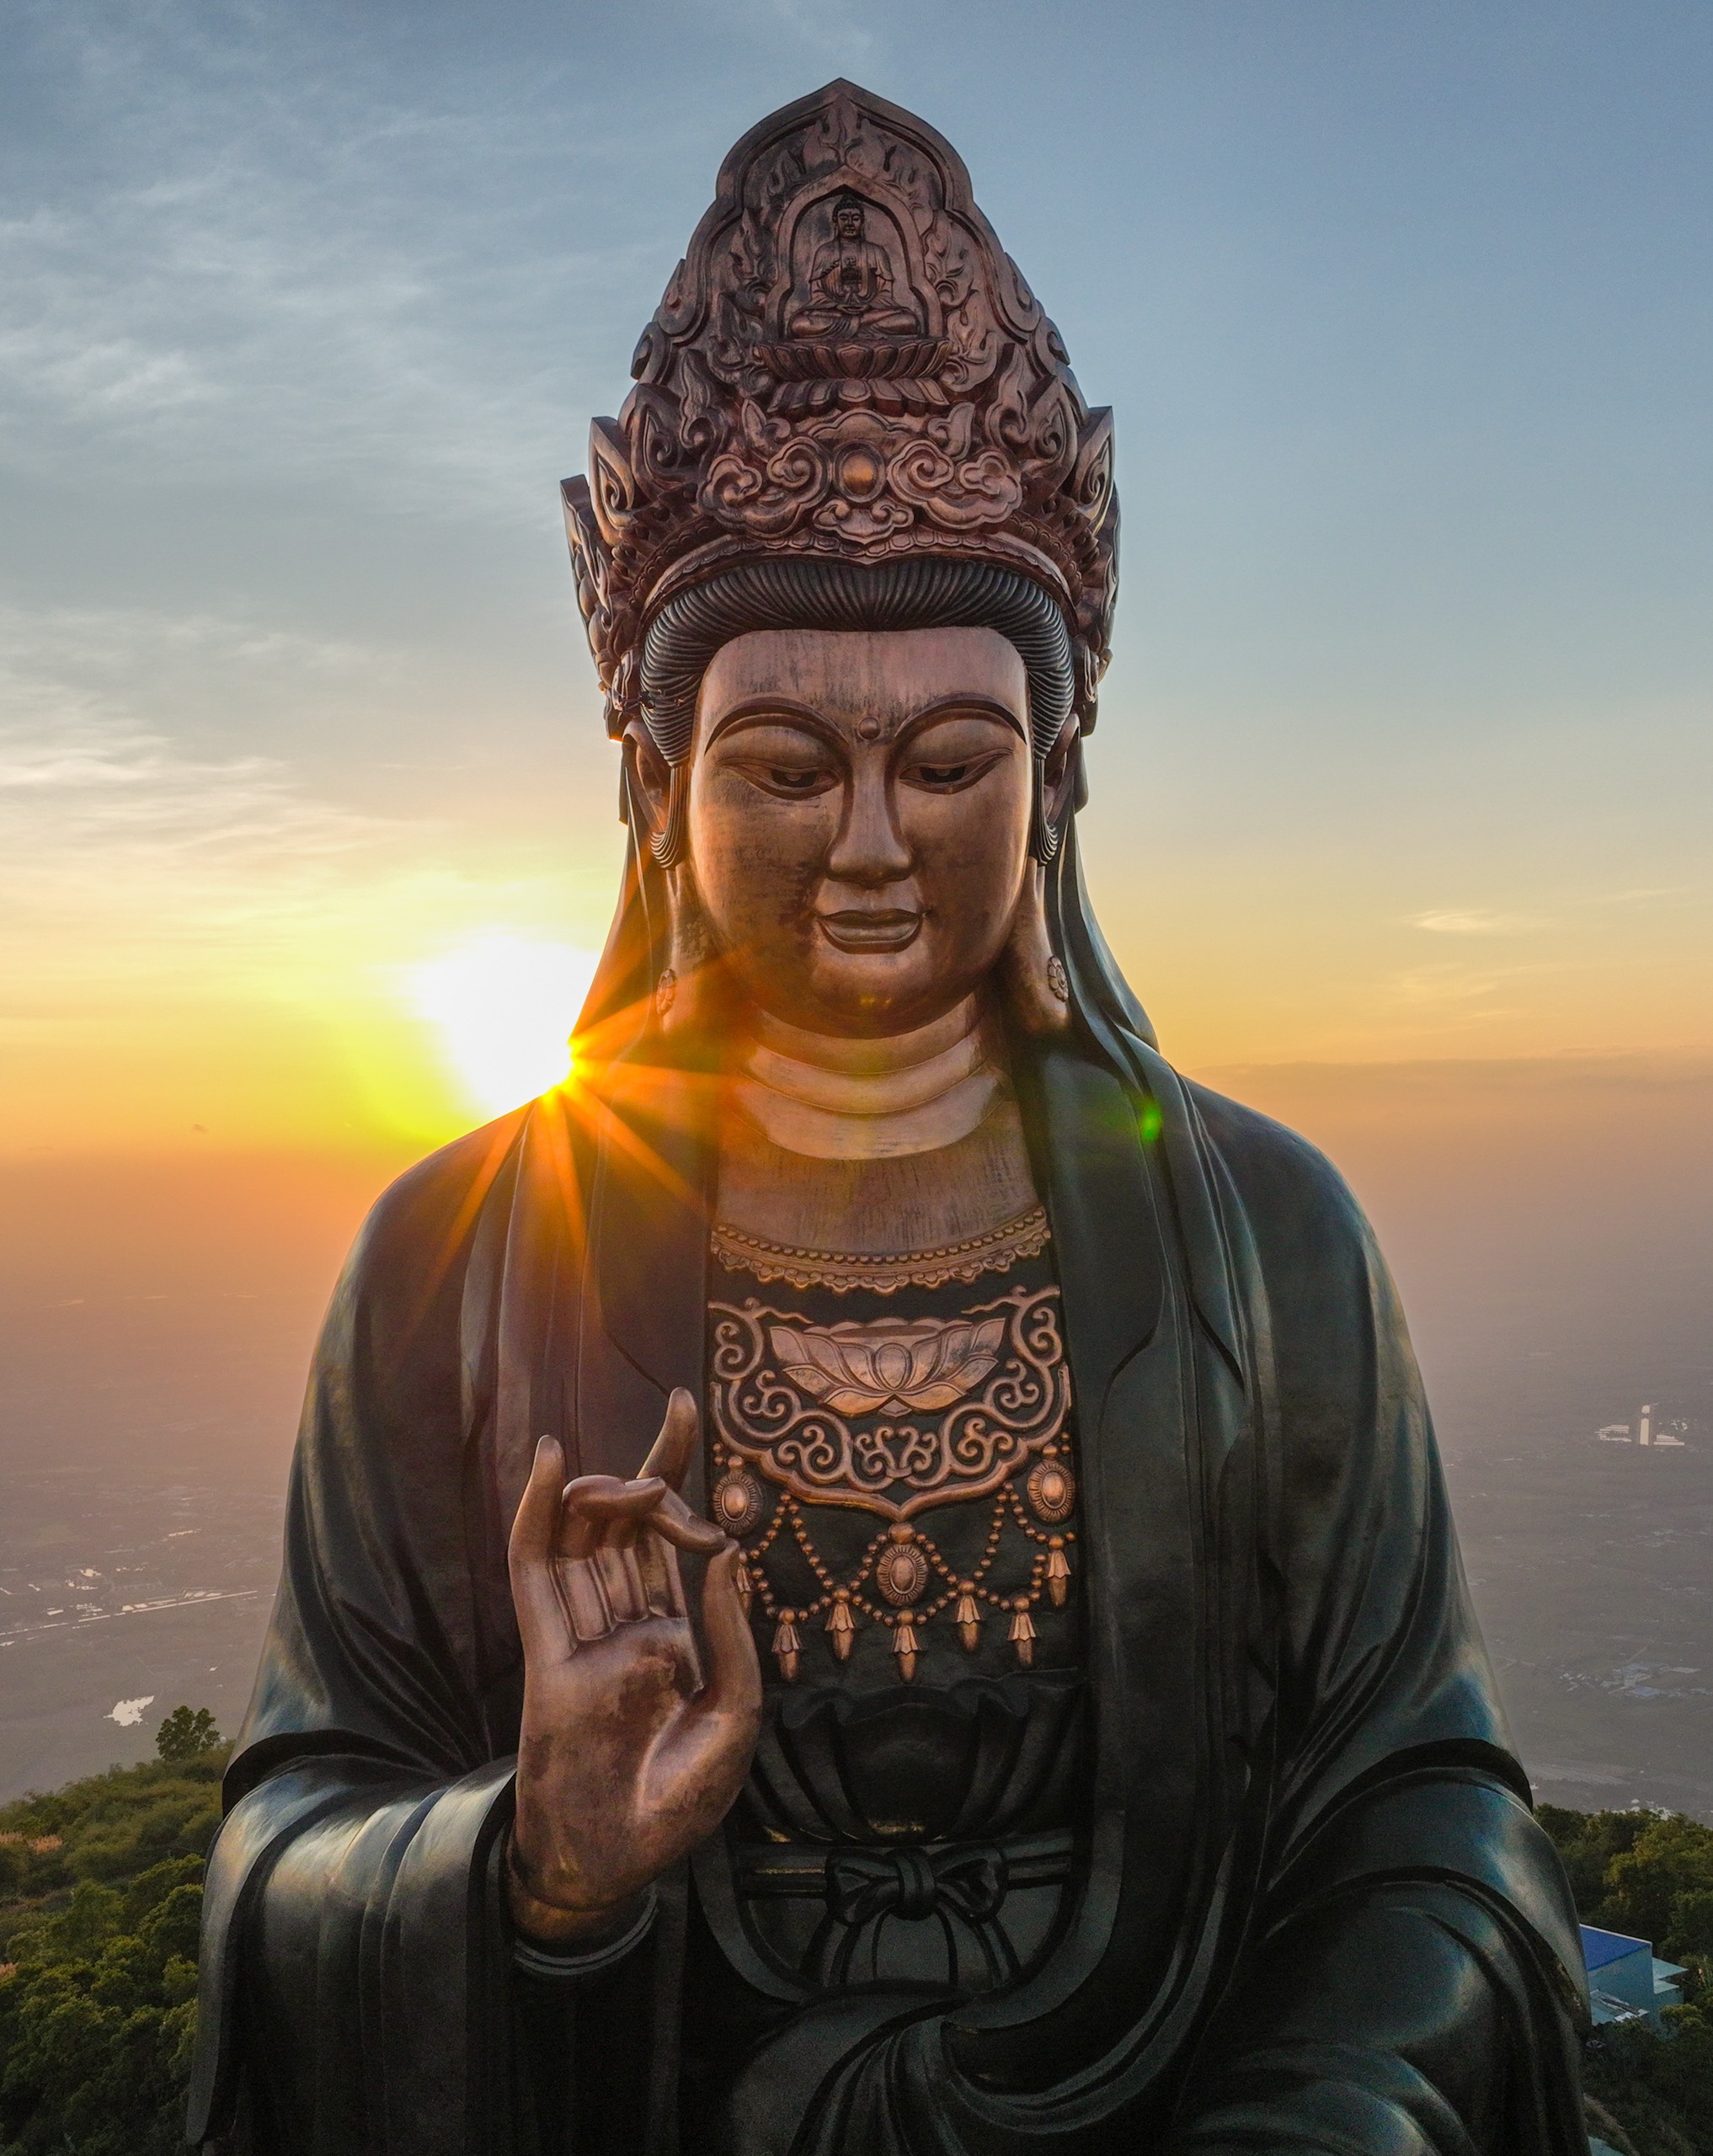 Nếu bạn là một người tôn giáo và tìm kiếm sự kính trọng, hãy xem ngay hình ảnh Phật Bà đồng cao nhất châu Á. Với chiều cao khổng lồ và vẻ đẹp kiên cường, tôn vinh cho sự hiện diện của Phật Bà trên nền văn hóa Á Đông. Sự ấn tượng của hình ảnh này sẽ khiến bạn tôn trọng và cảm thông với tôn giáo của người khác.